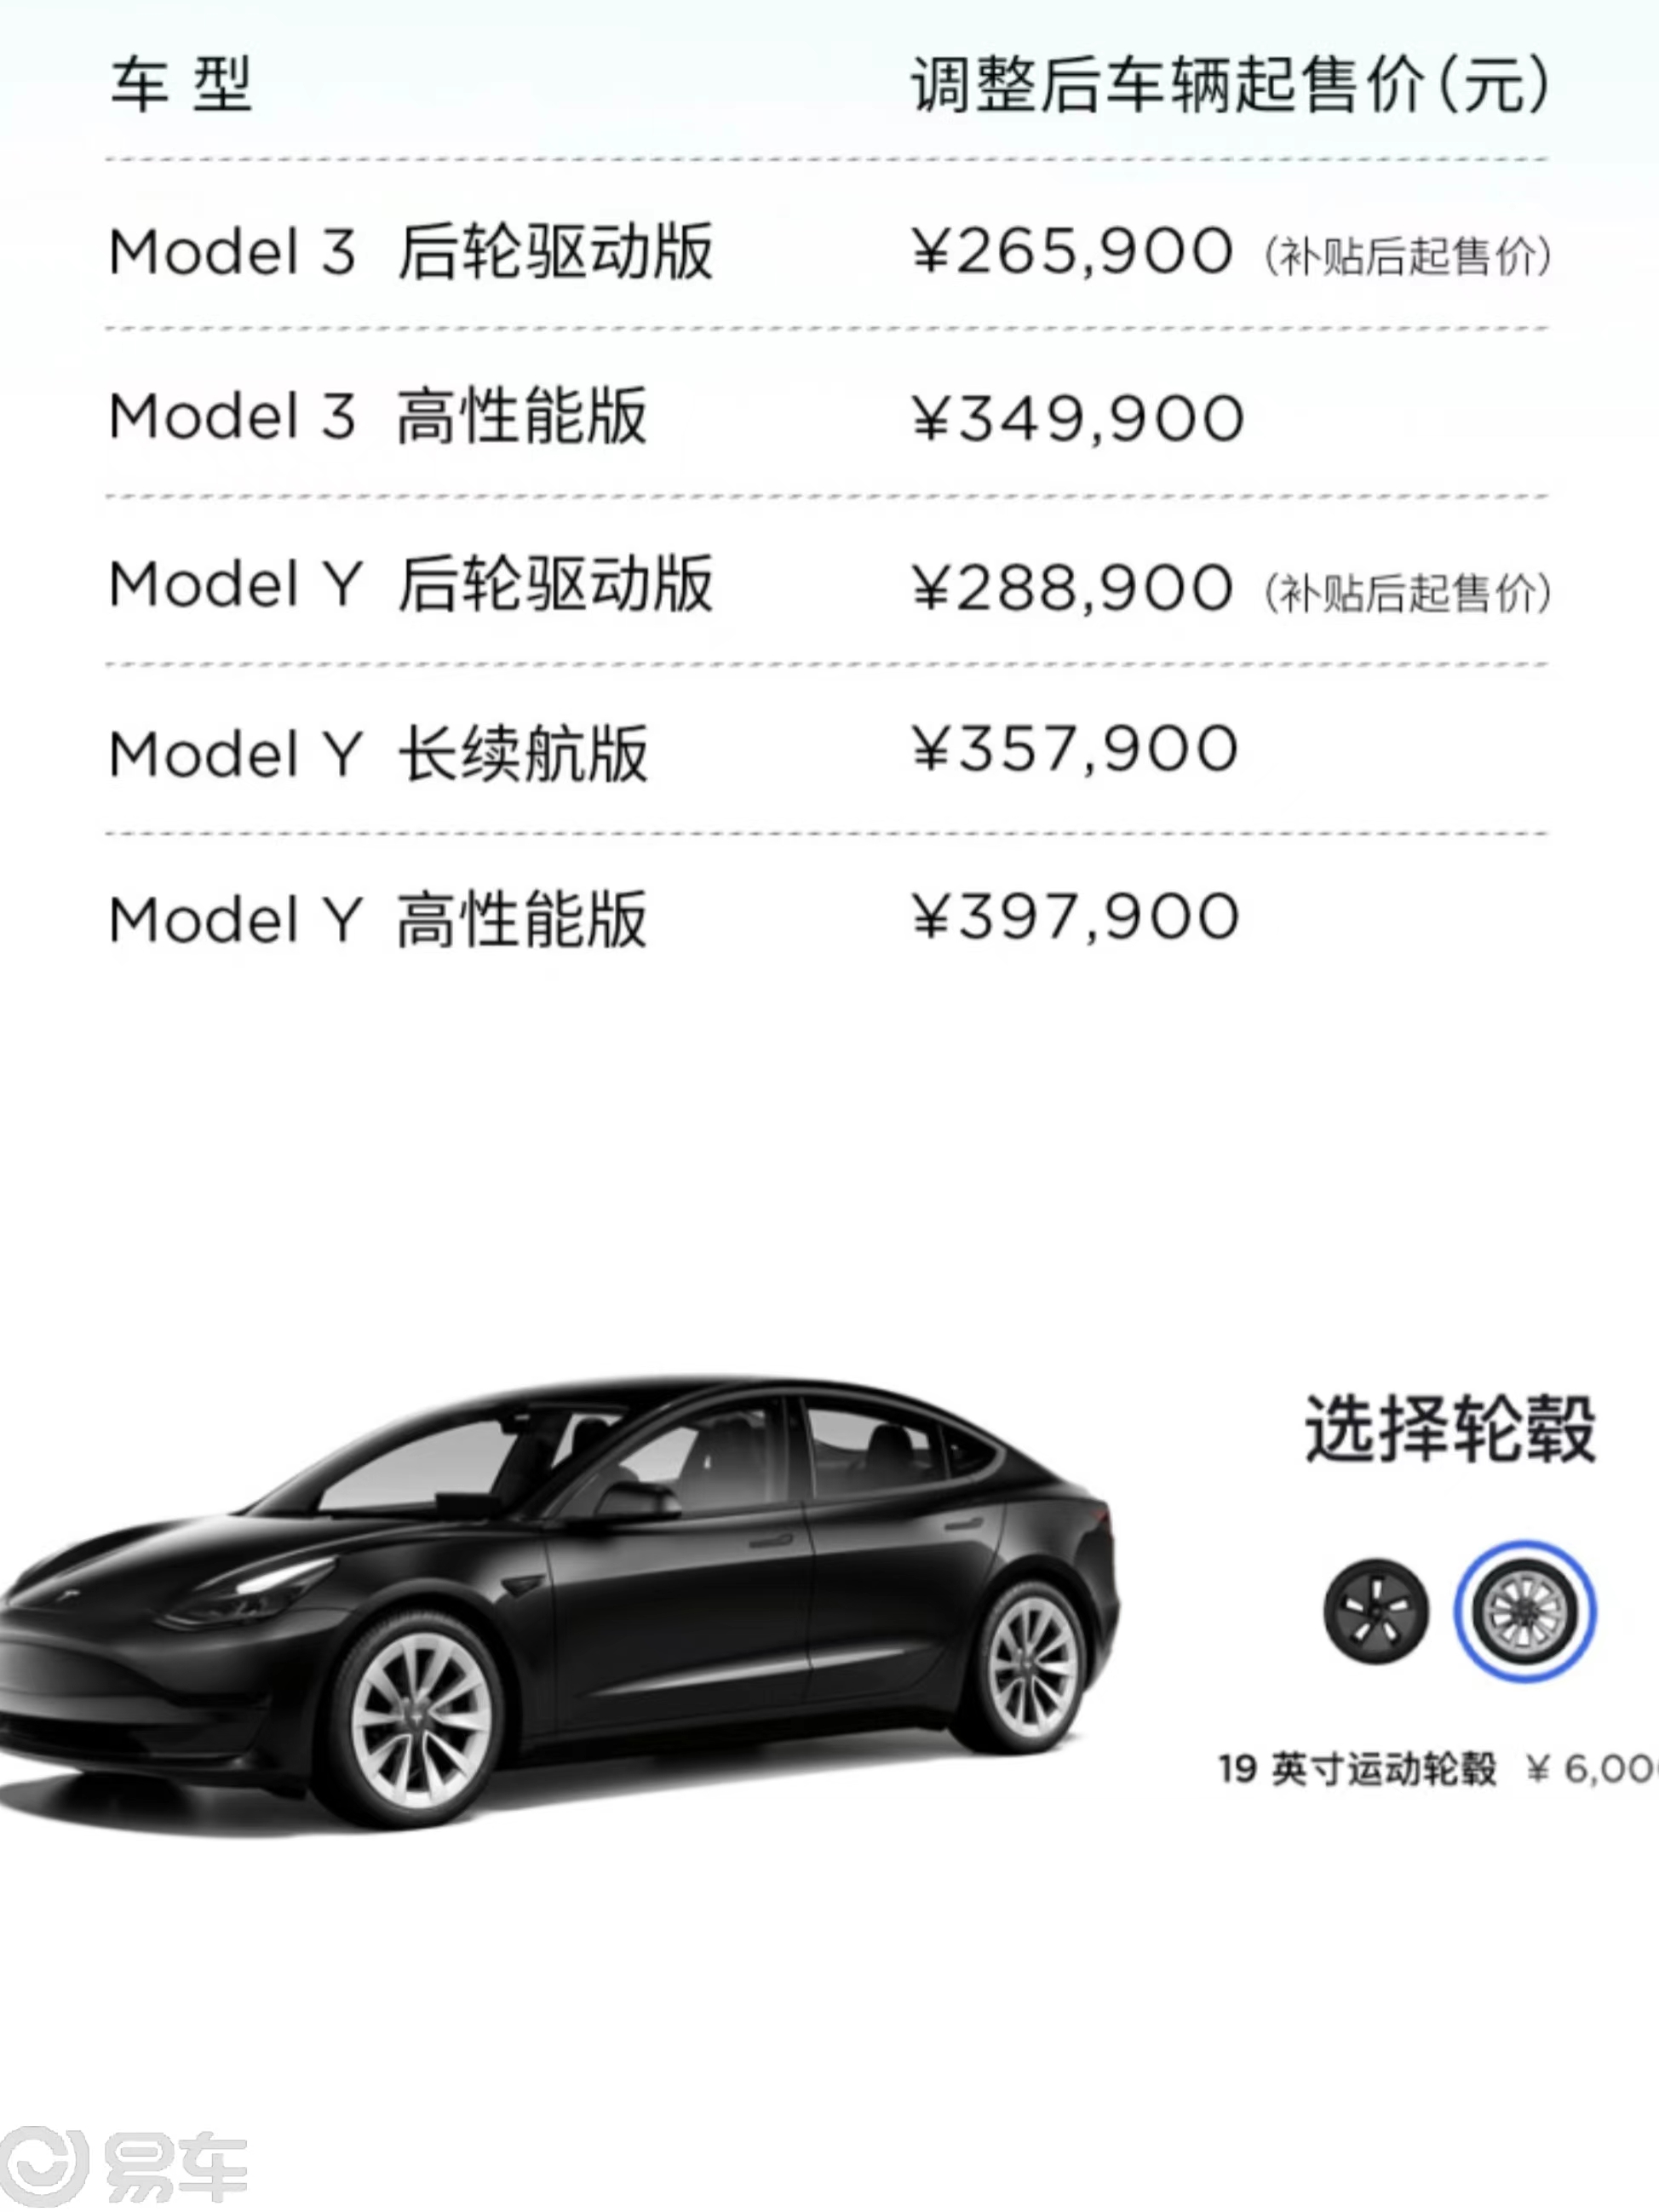 特斯拉Model 3正式降价！目前Model 3后轮驱动版起售价为23.19万元_Model 3社区_易车社区